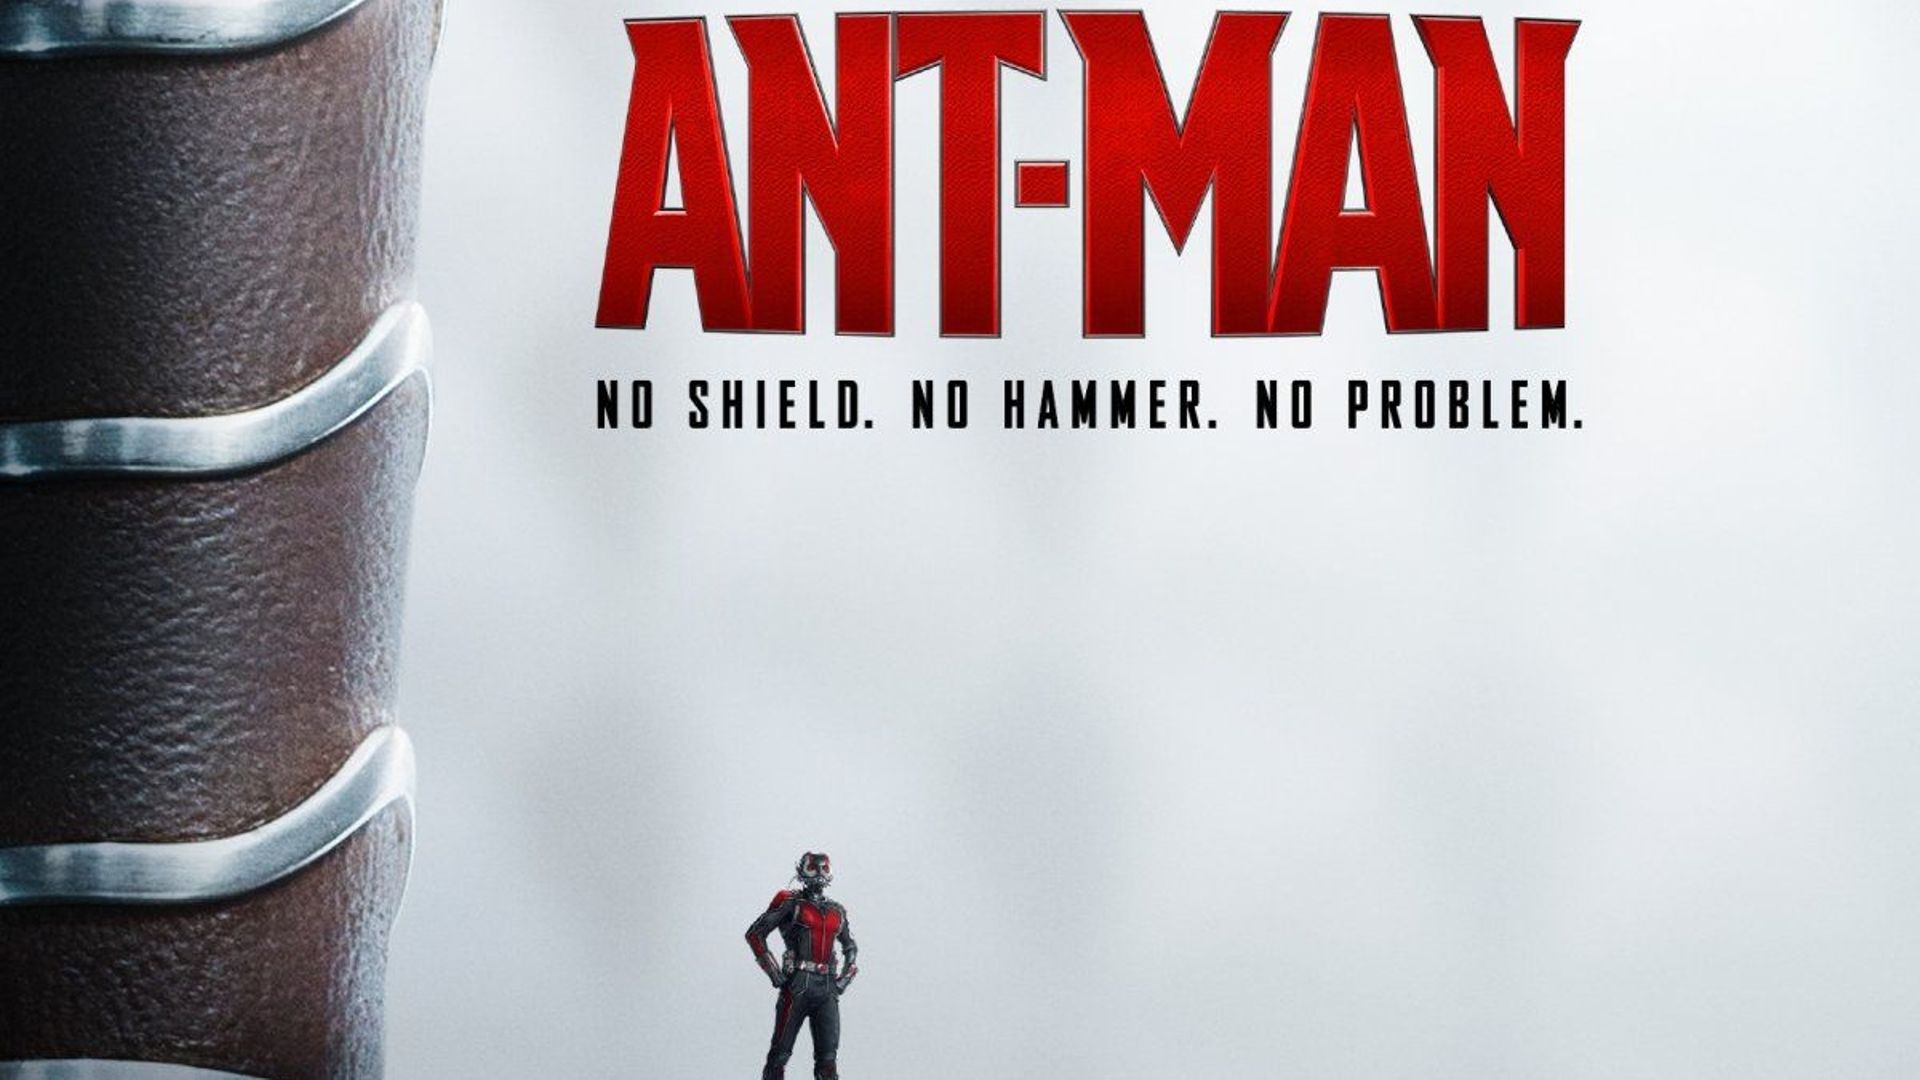 Le second volet de "Ant-Man" sortira à l'été 2018